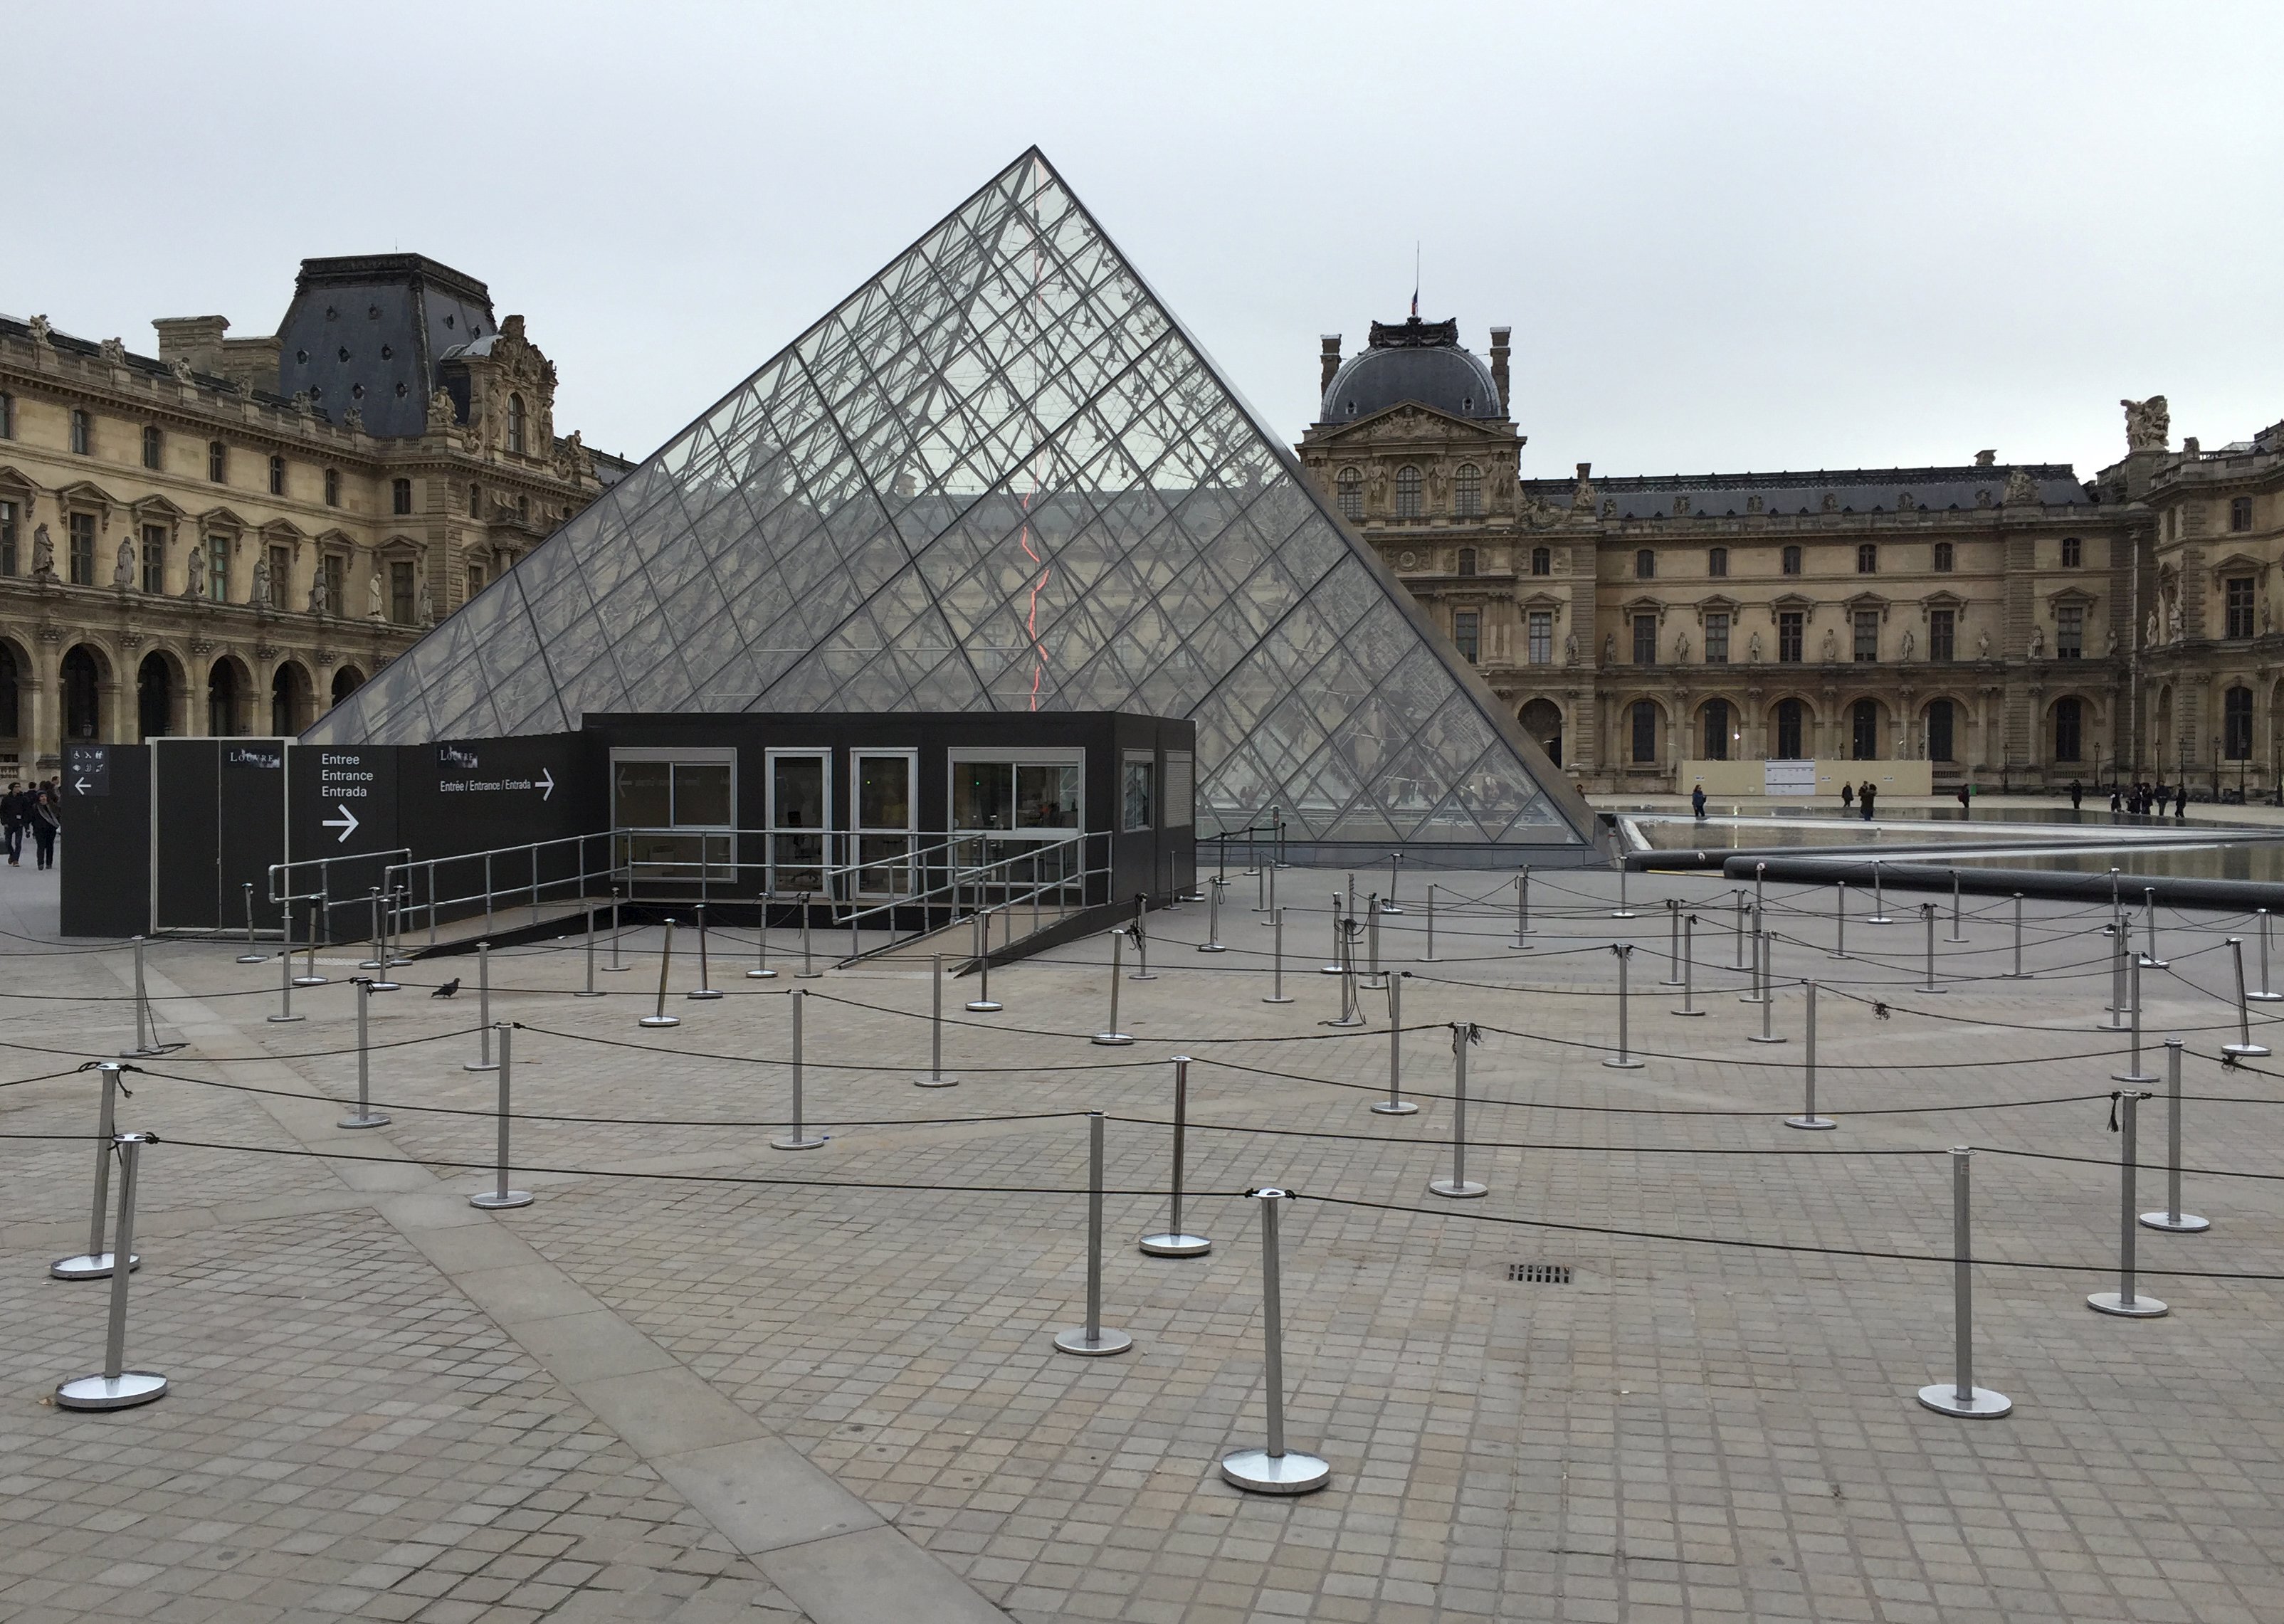 Pintu masuk museum Louvre di Paris, Perancis terlihat sepi setelah ditutup pada hari Sabtu (14/11), setelah kejadian serangkaian serangan mematikan di ibukota negara. ANTARA FOTO/REUTERS/Reinhard Krause.